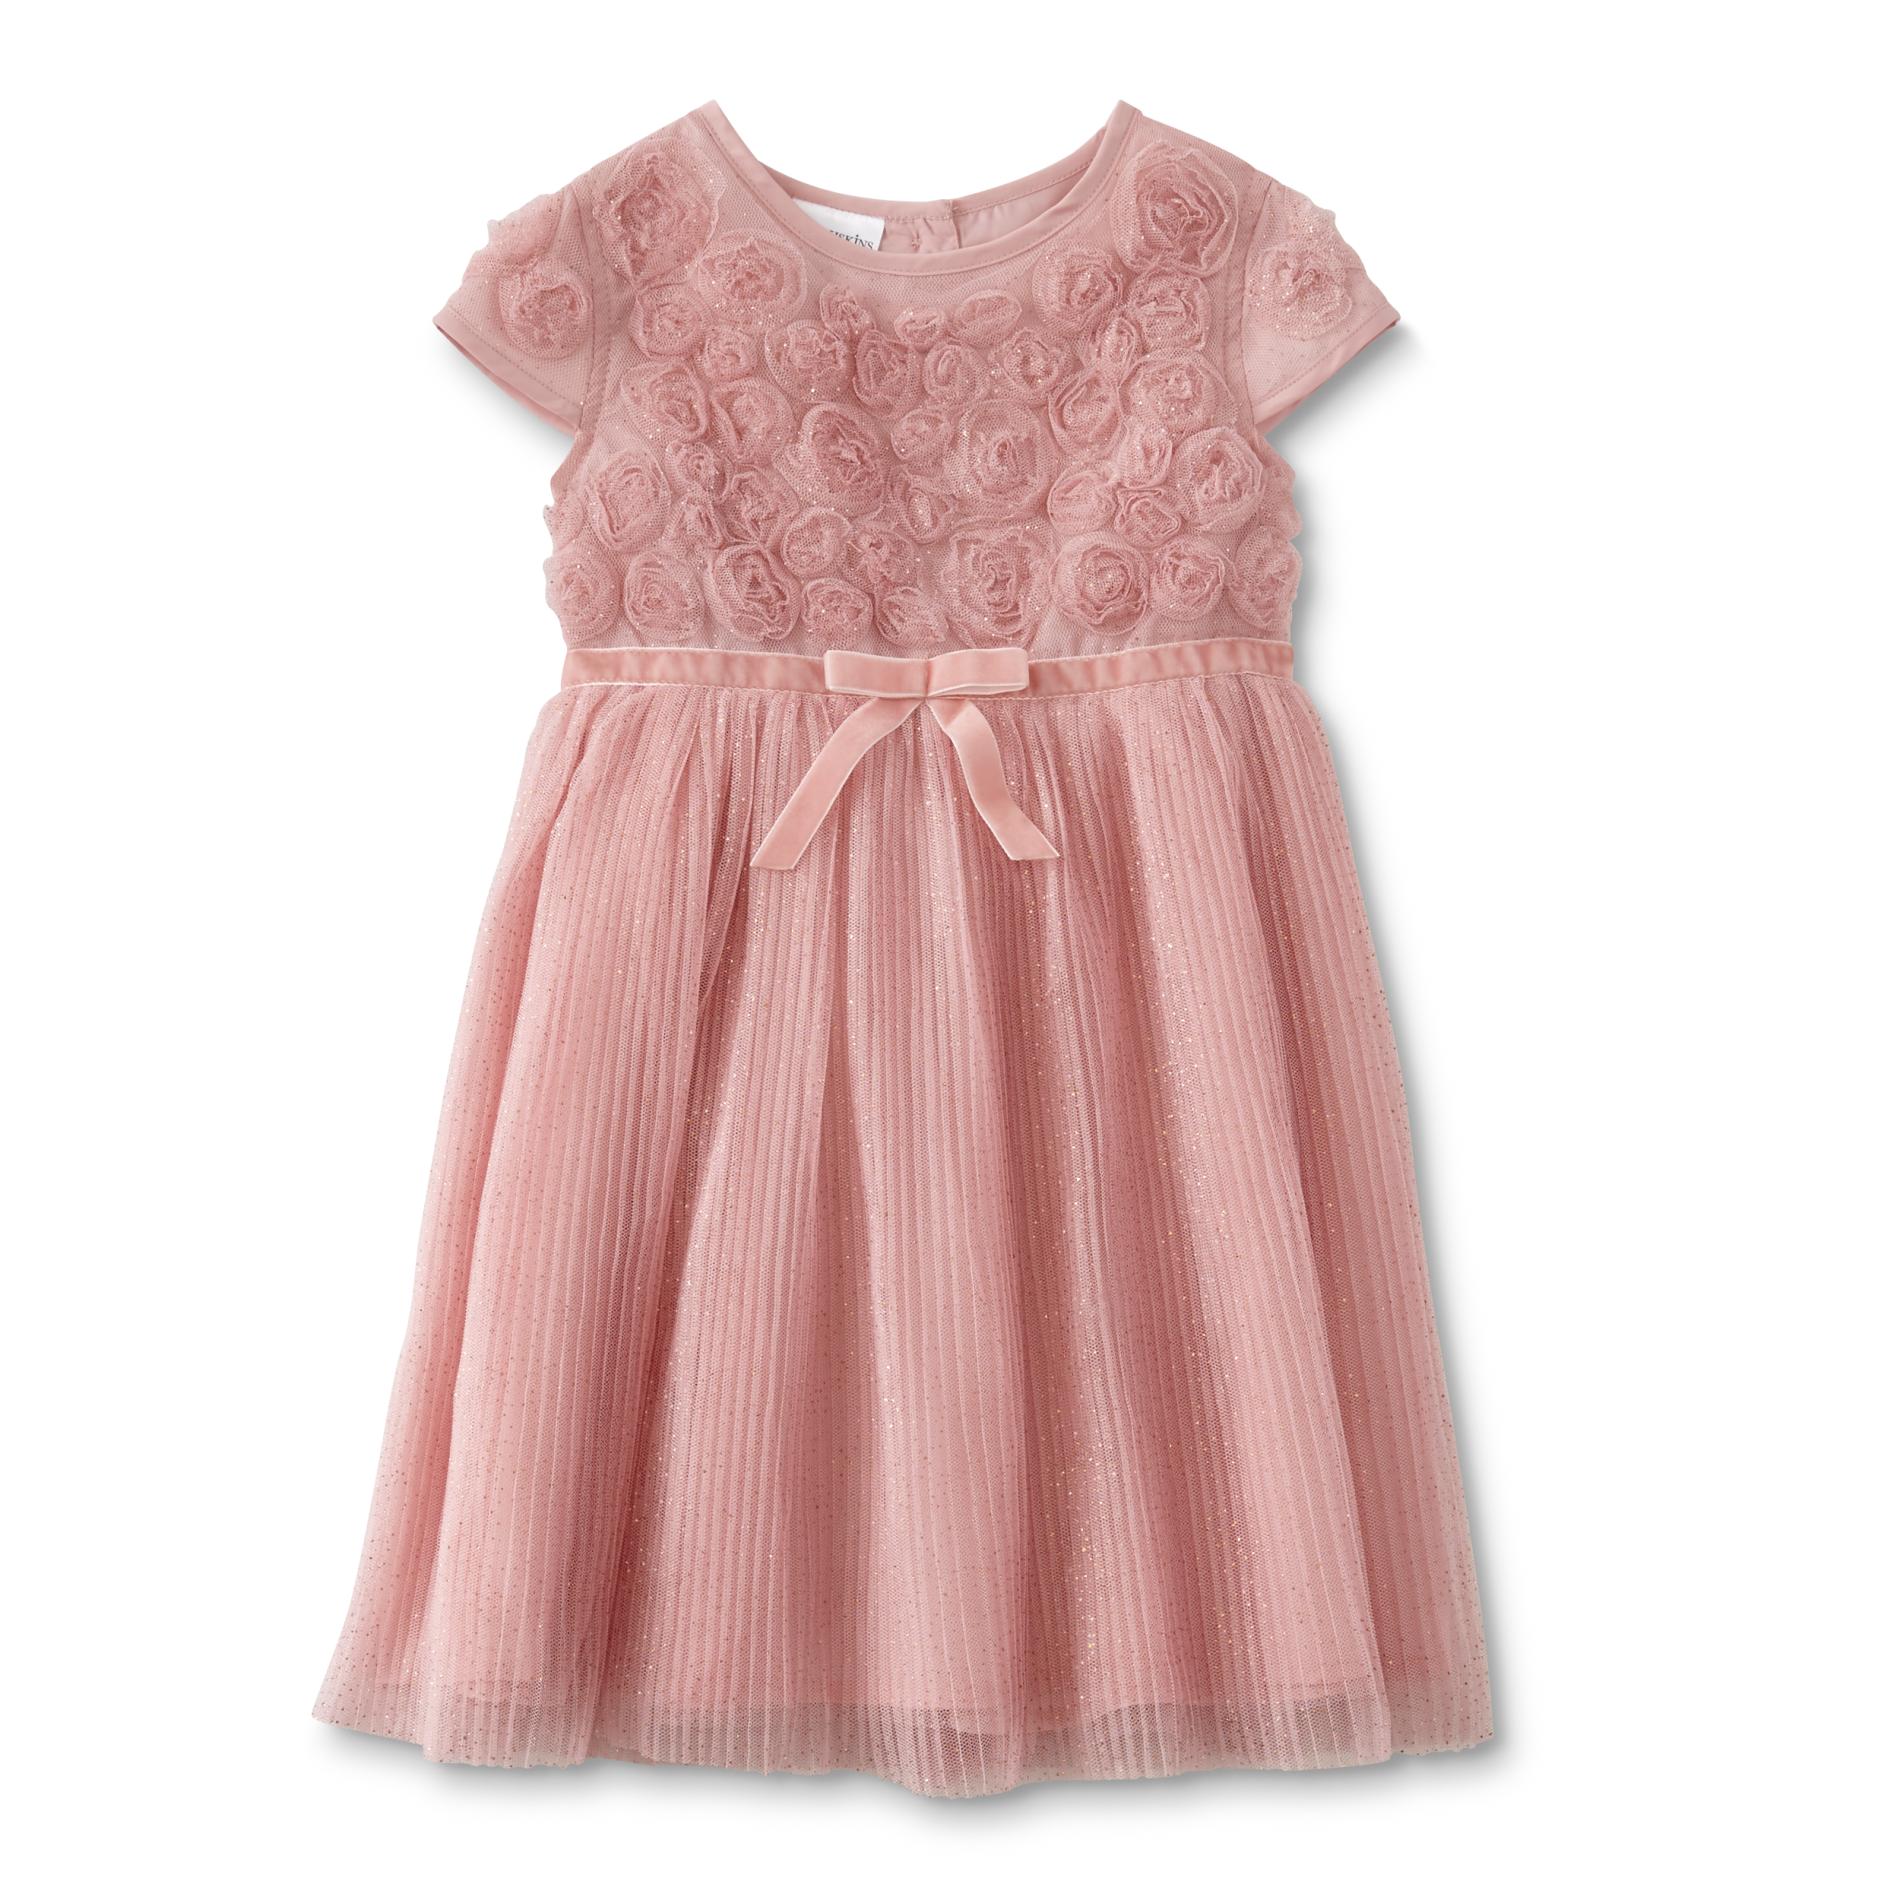 Toughskins Infant & Toddler Girls' Rosette Occasion Dress